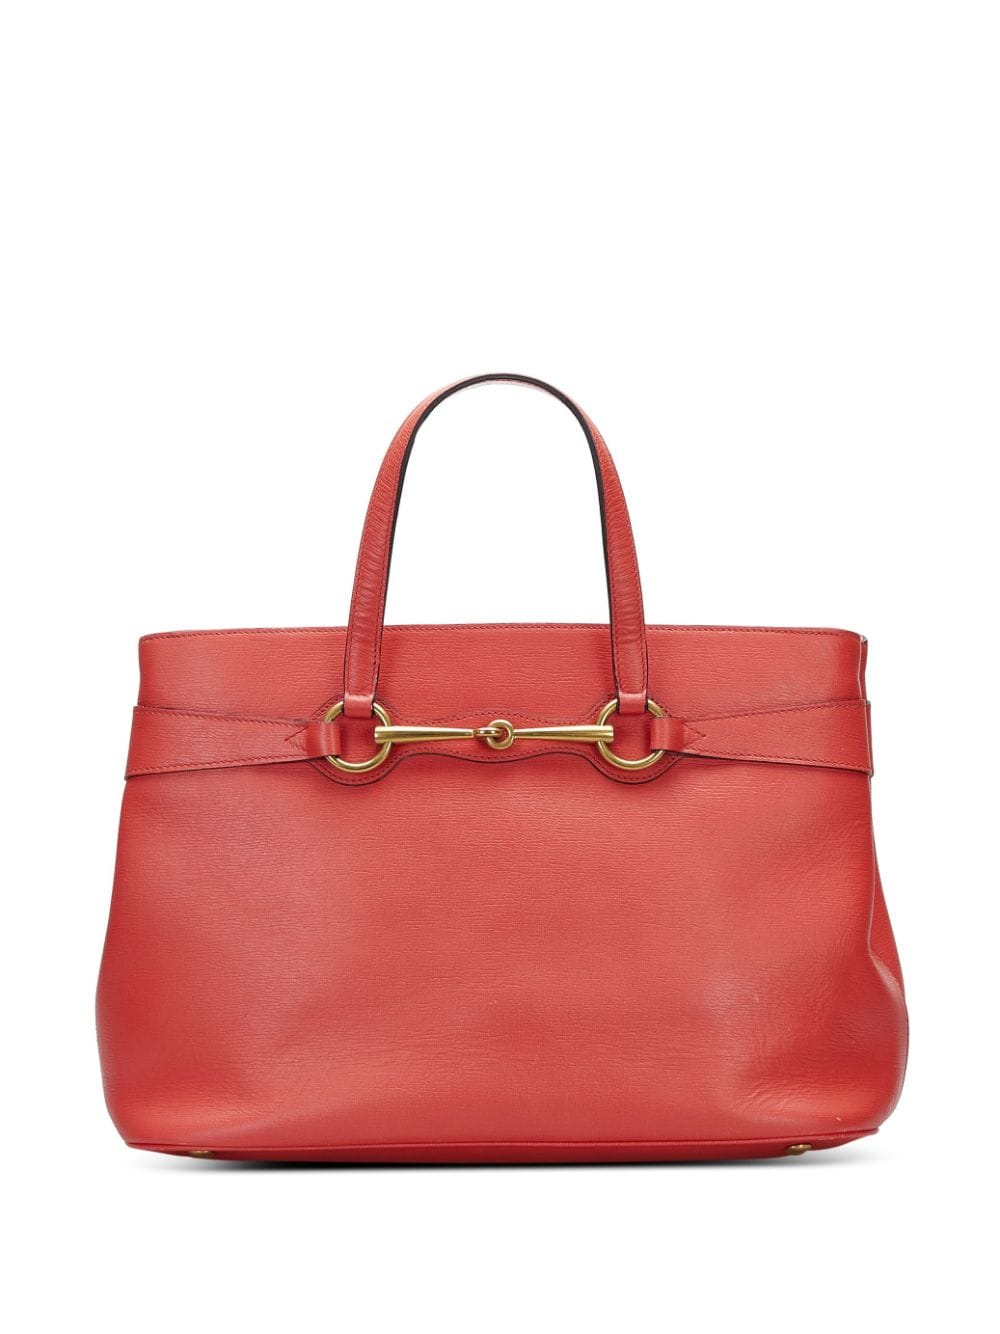 Pre-owned Gucci Bright Bit Leather Handbag In Orange